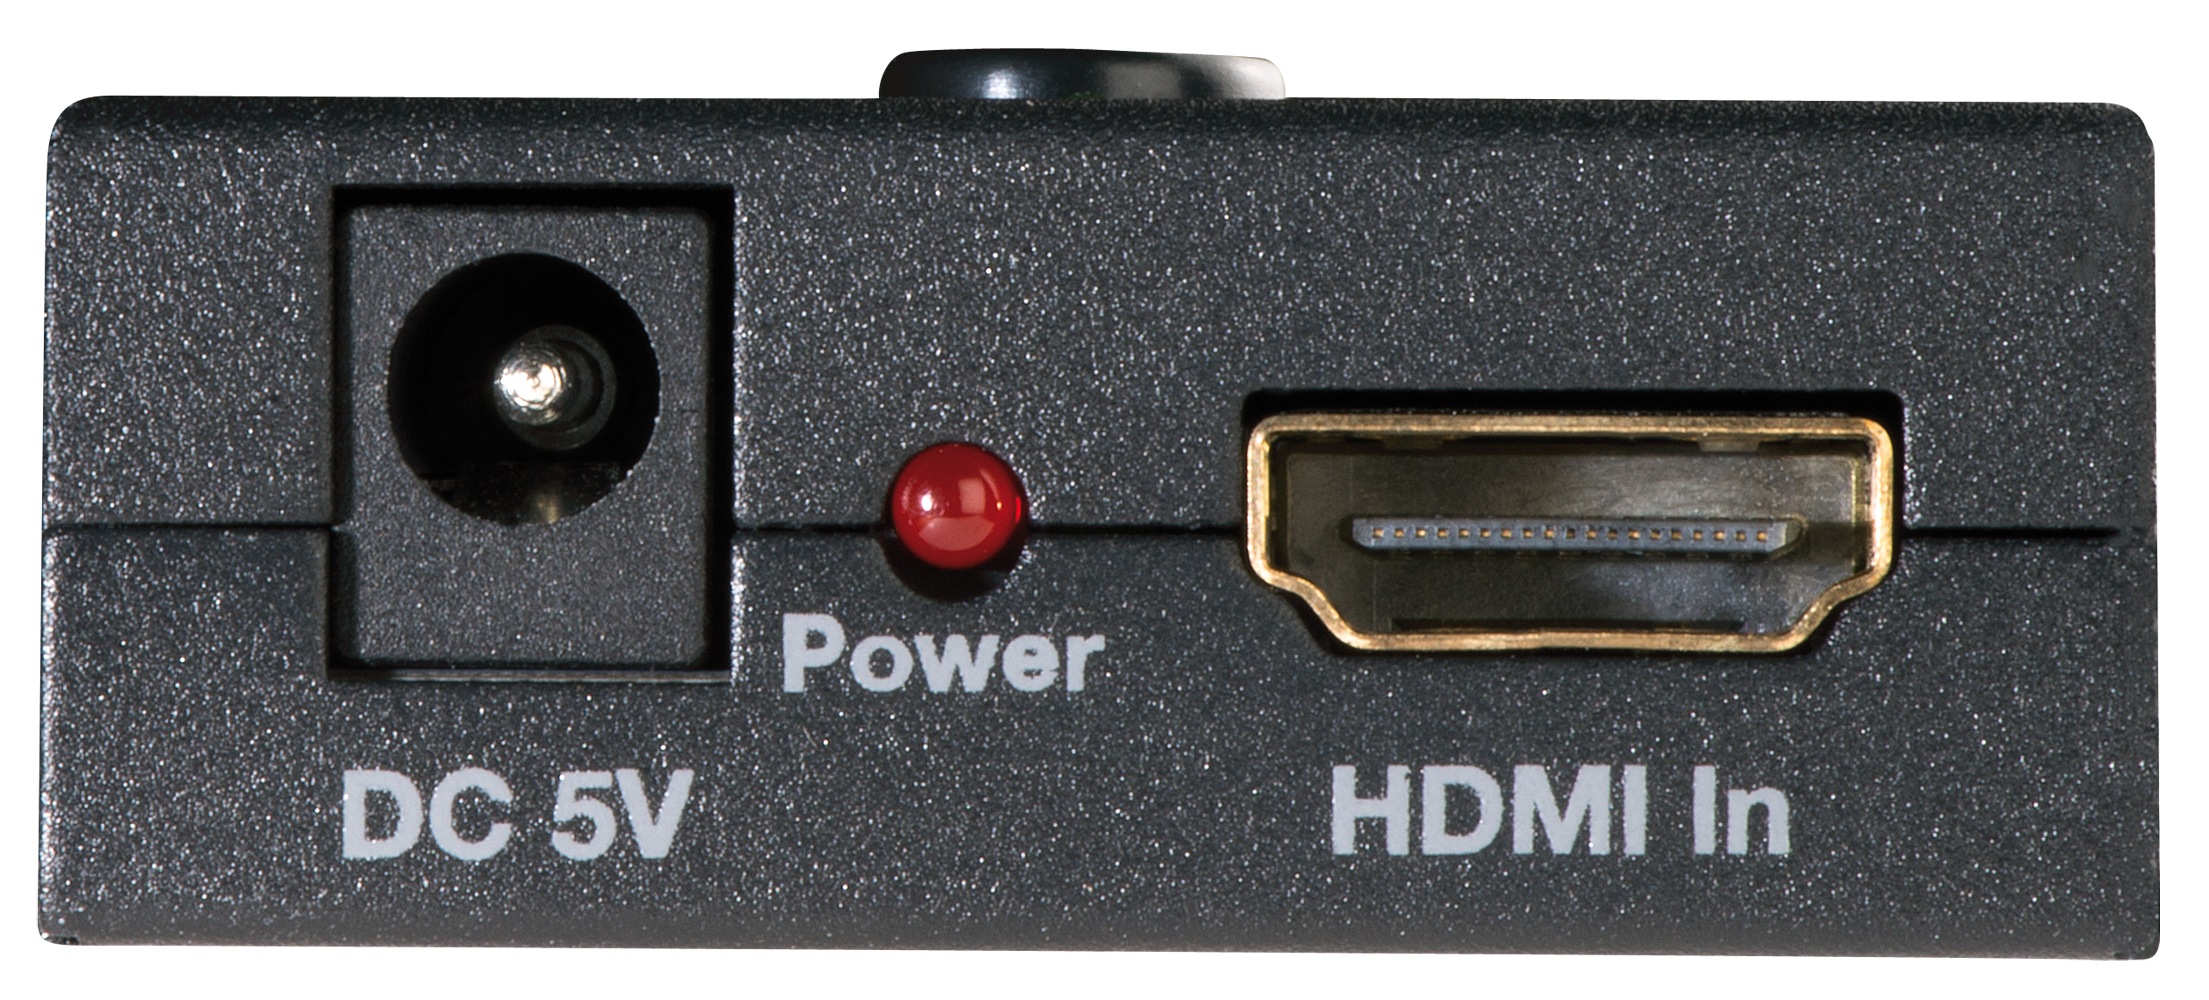 HDMI ARC Audio Extractor - Lindy Australia